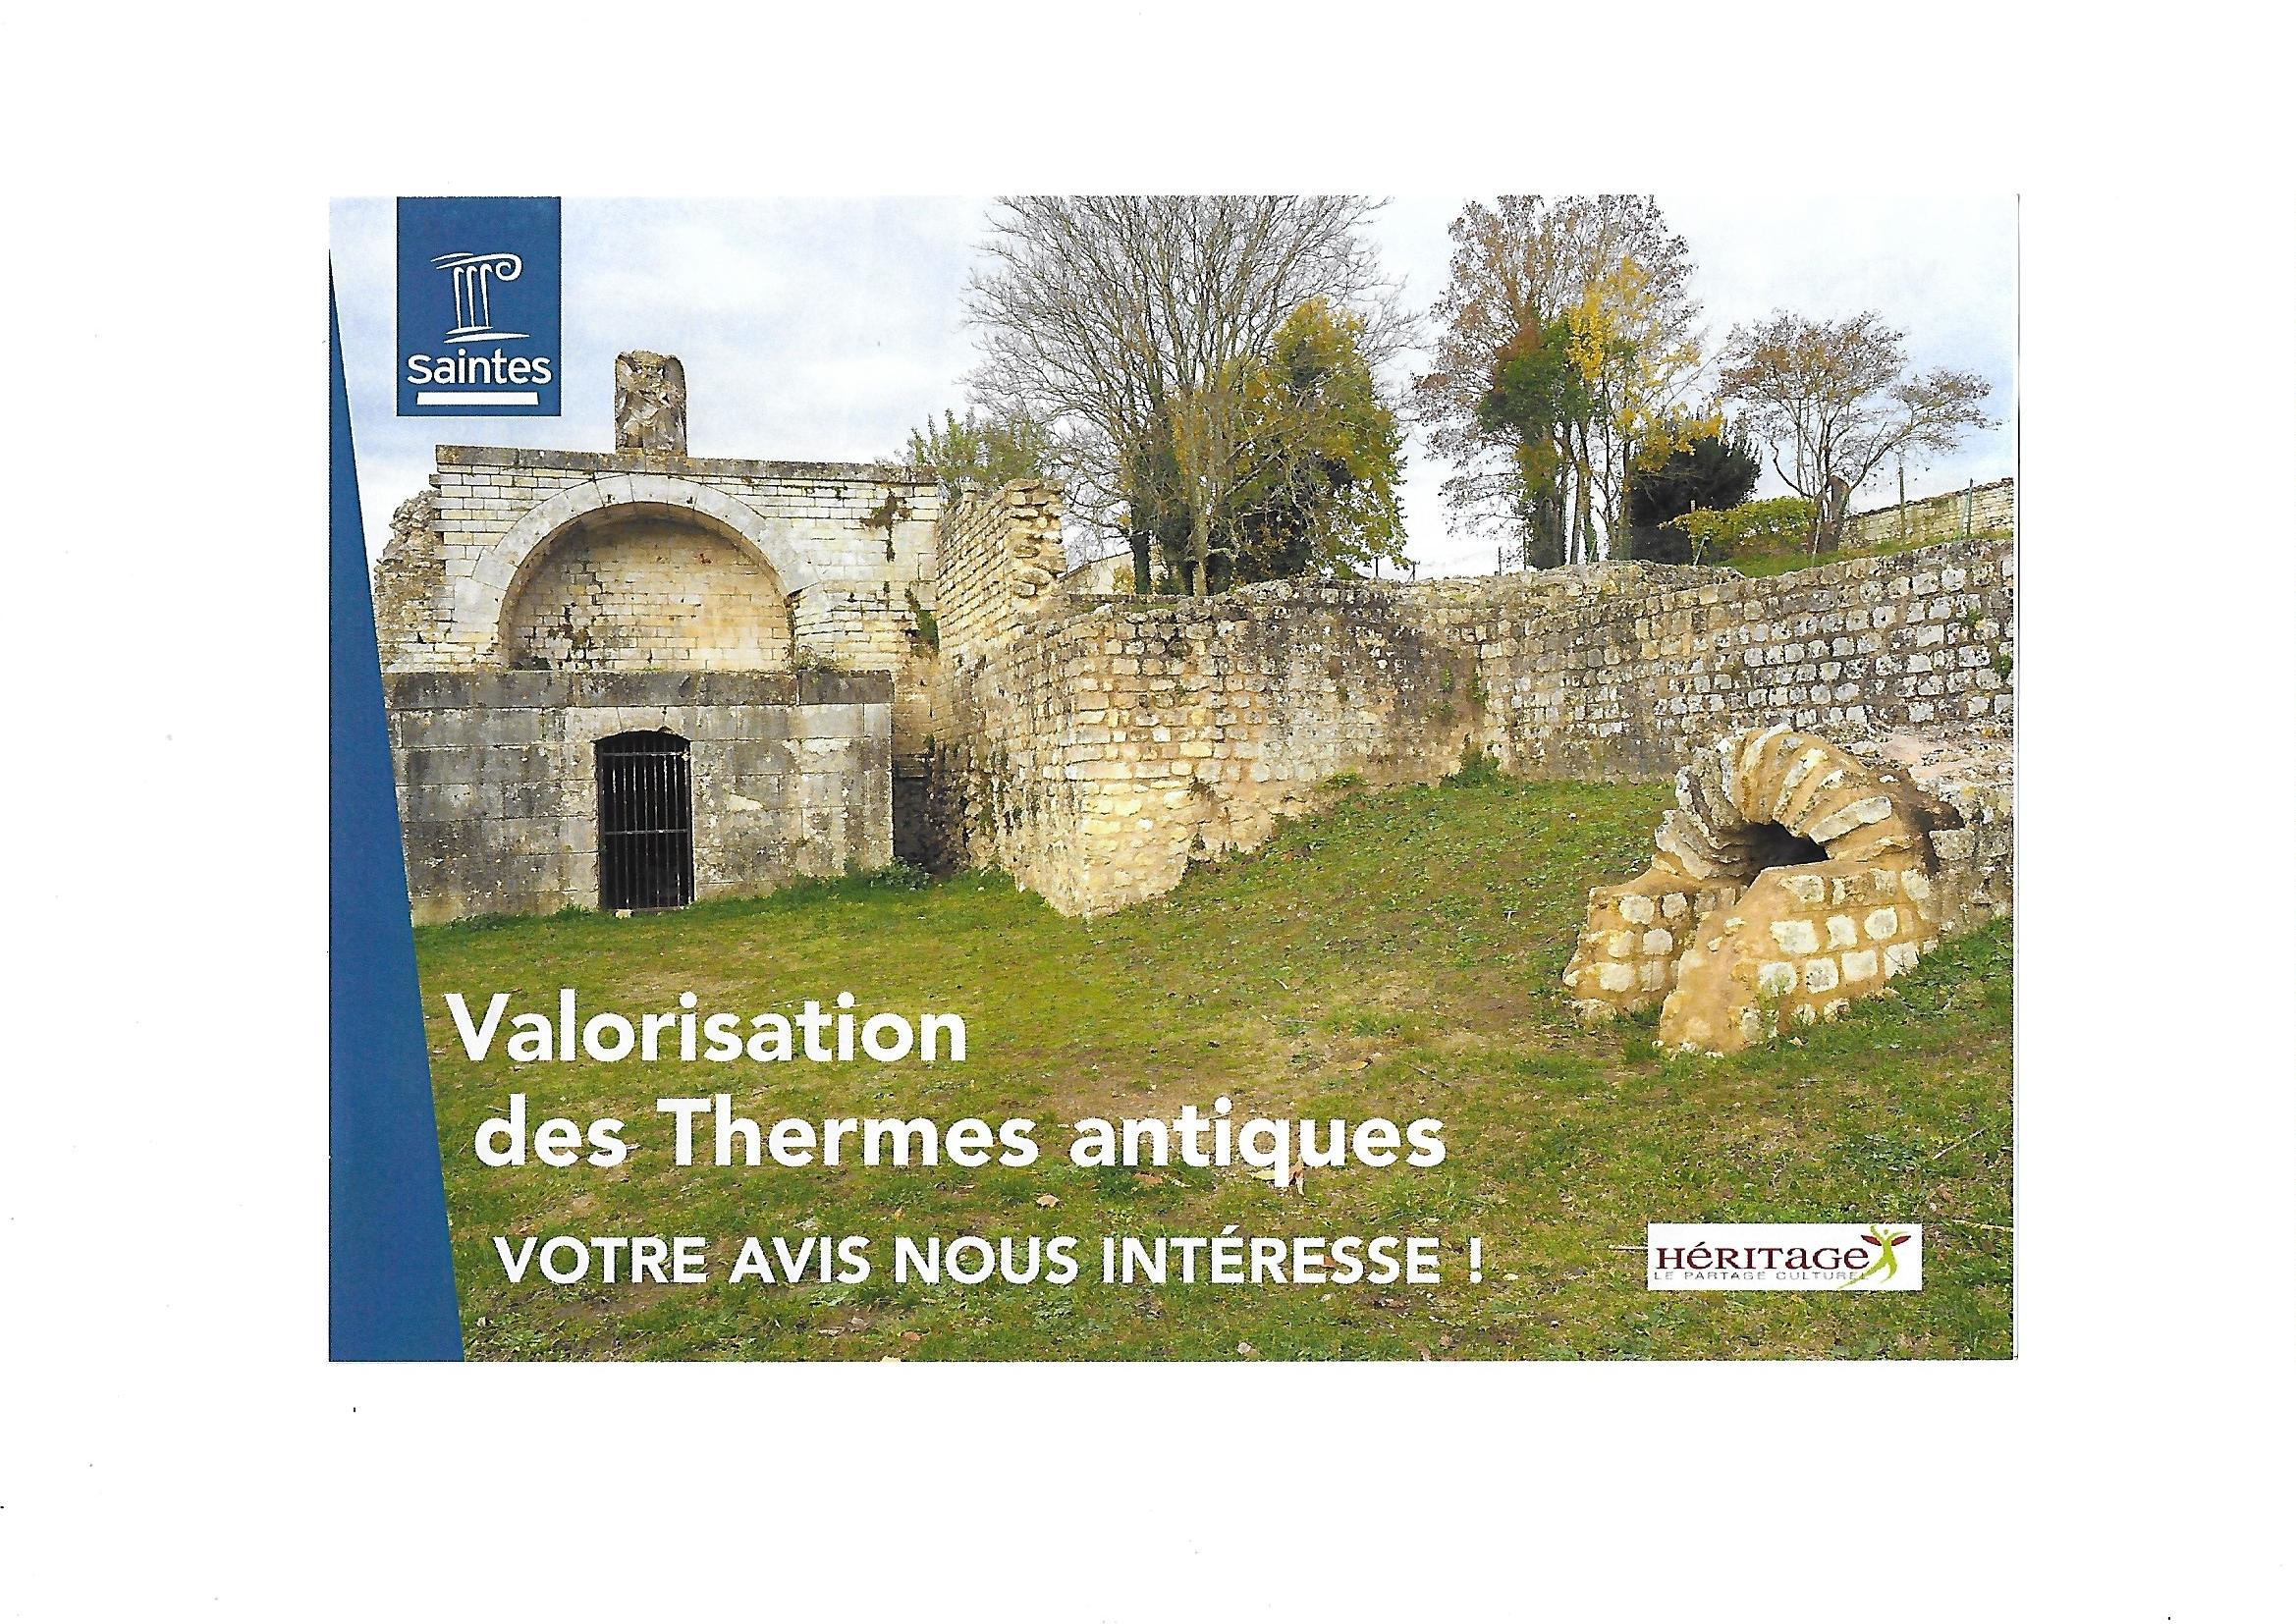 La ville de Saintes annonce le lancement d’une démarche de sécurisation et valorisation des thermes antiques de St Saloine.